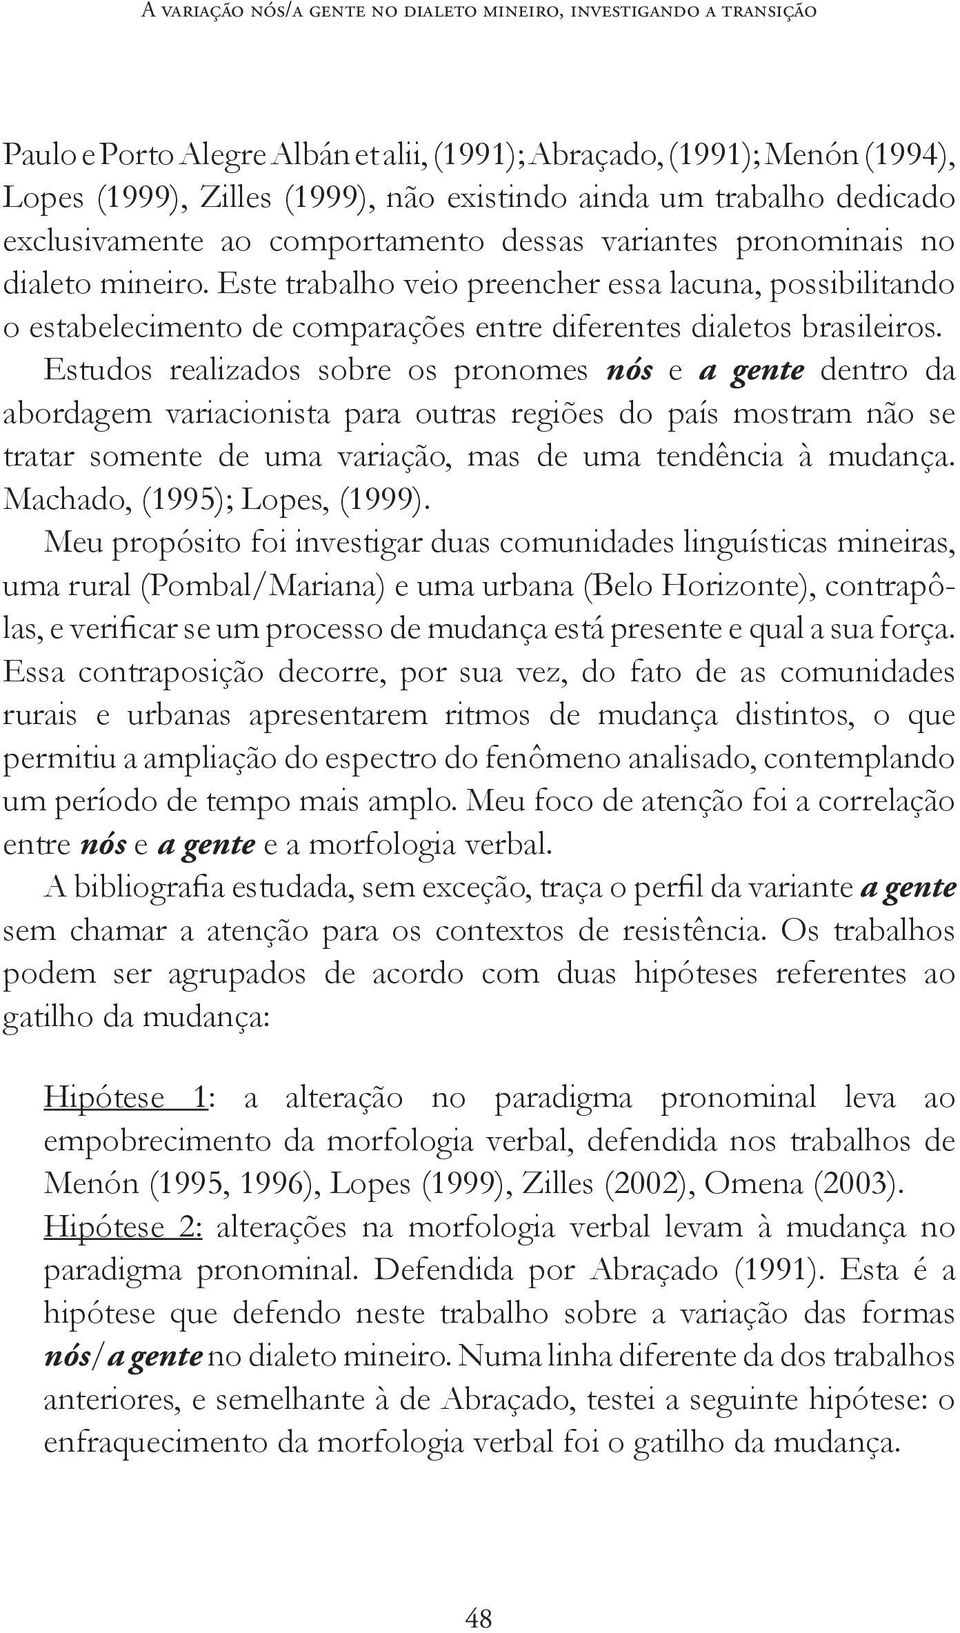 Este trabalho veio preencher essa lacuna, possibilitando o estabelecimento de comparações entre diferentes dialetos brasileiros.